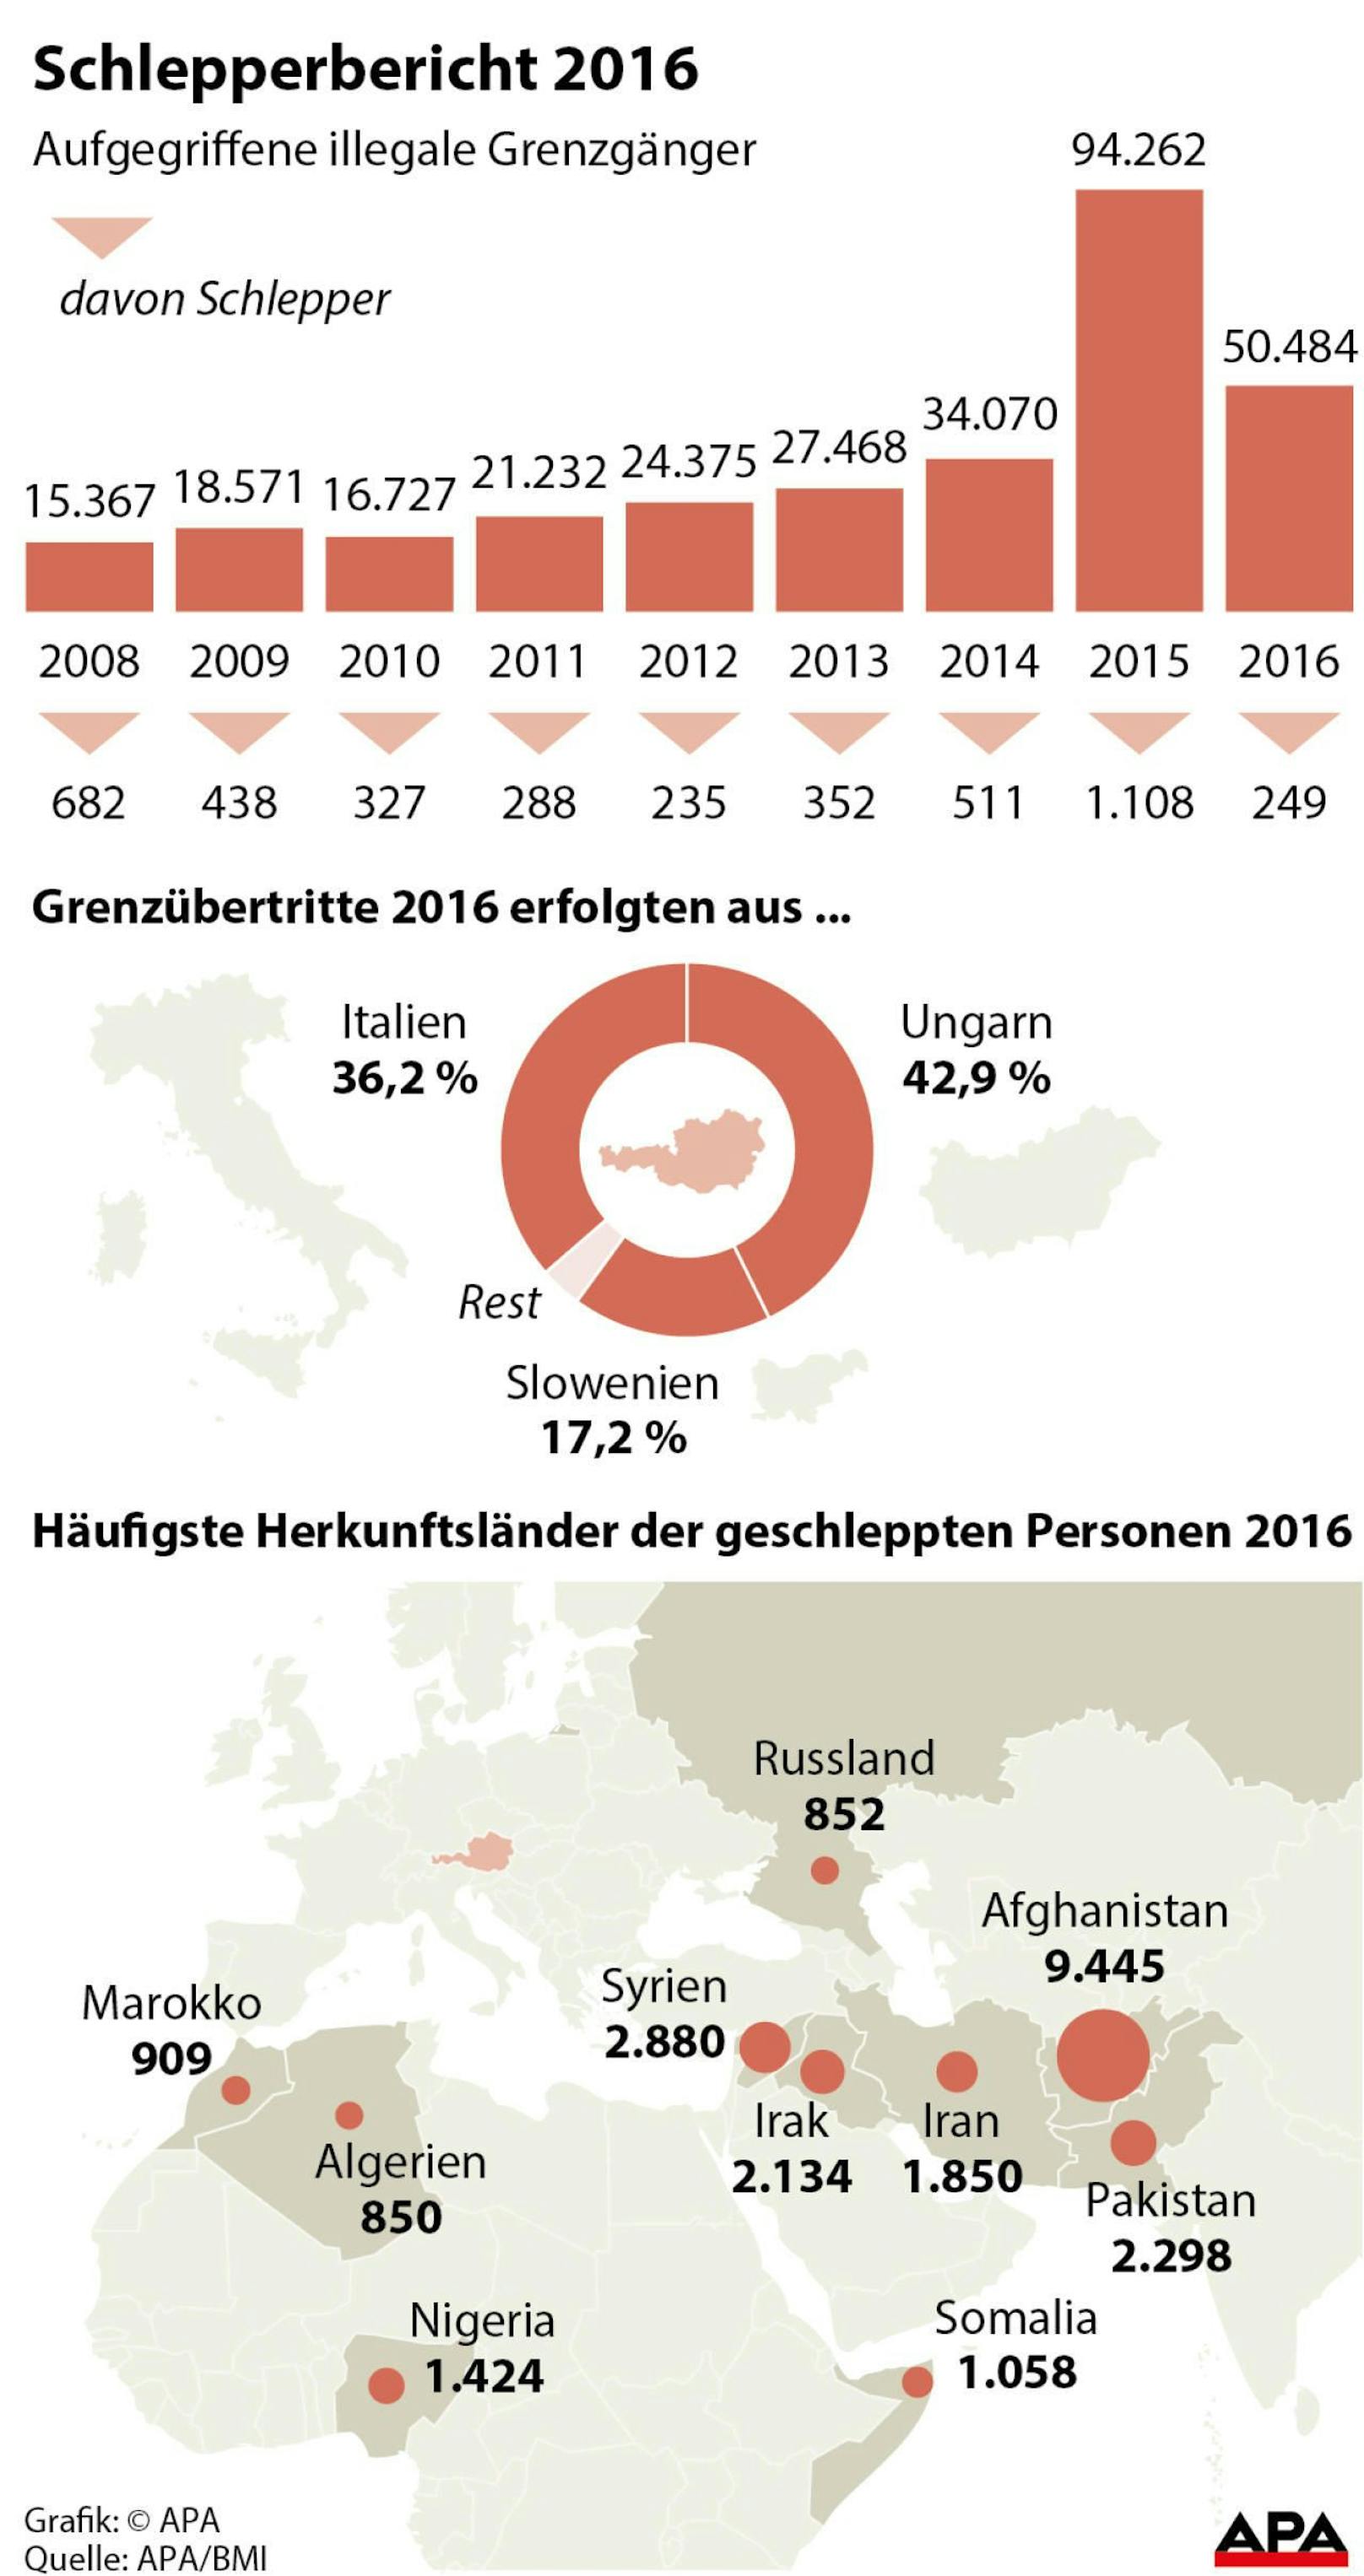 Aufgegriffene illegale Grenzgänger 2008-2016; Herkunft der Geschleppten.